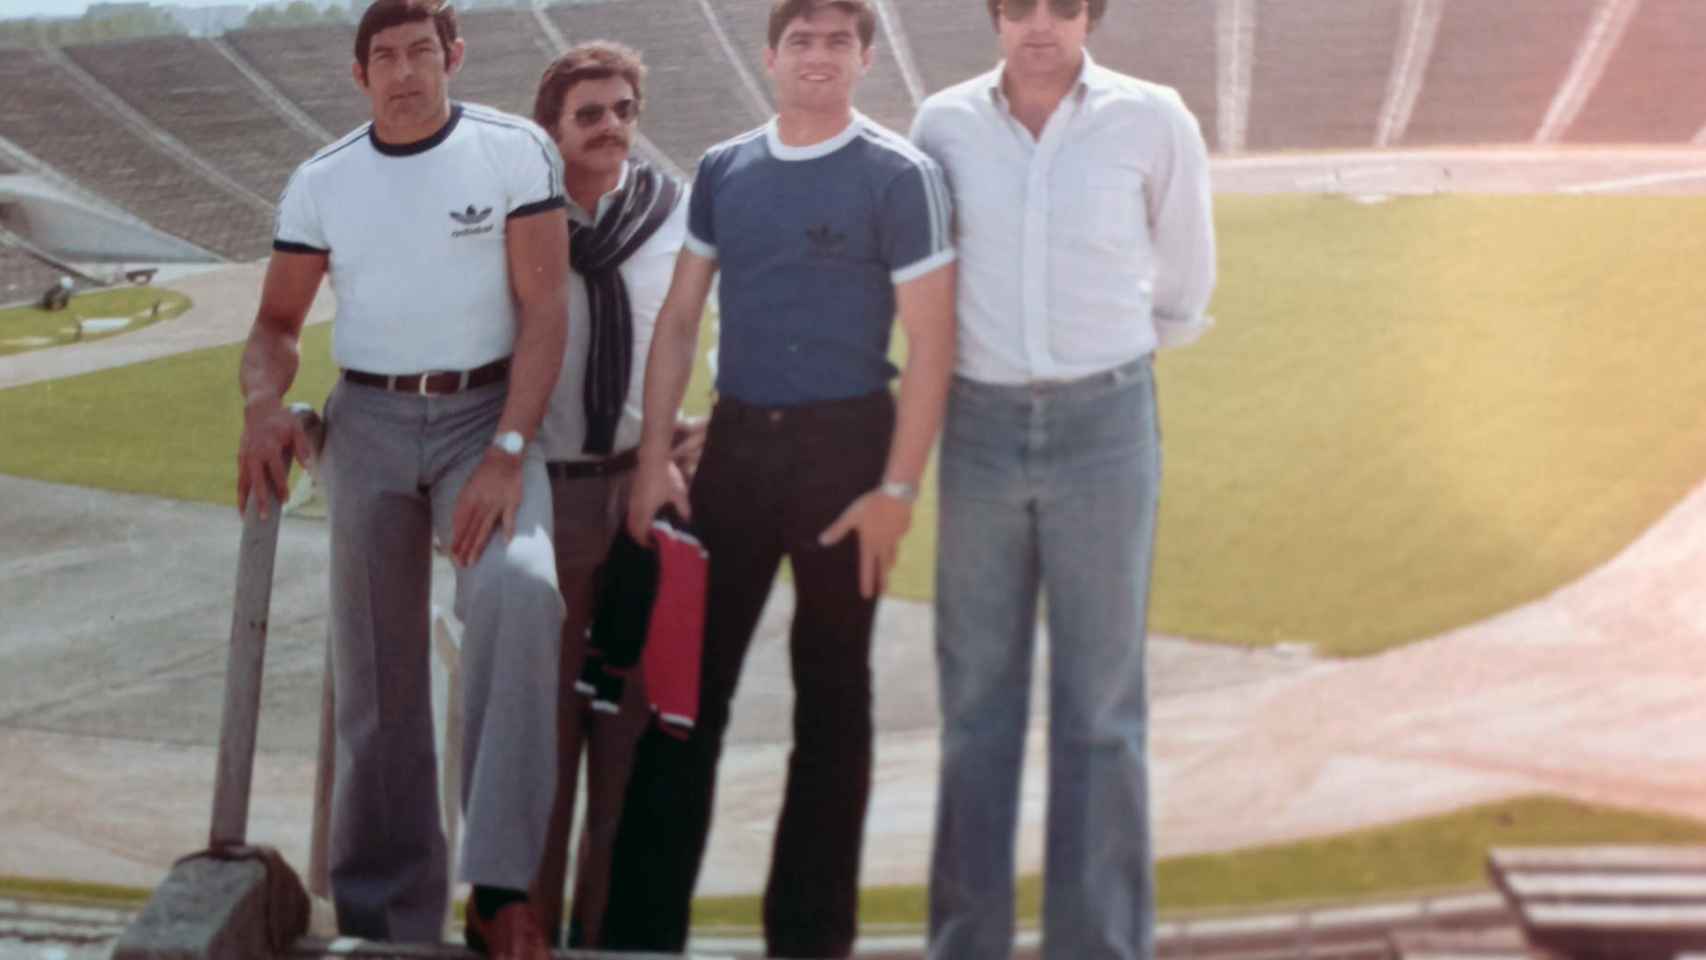 Humberto, Ernesto, Aracil y Paco González, masajista, posan en el estadio polaco.